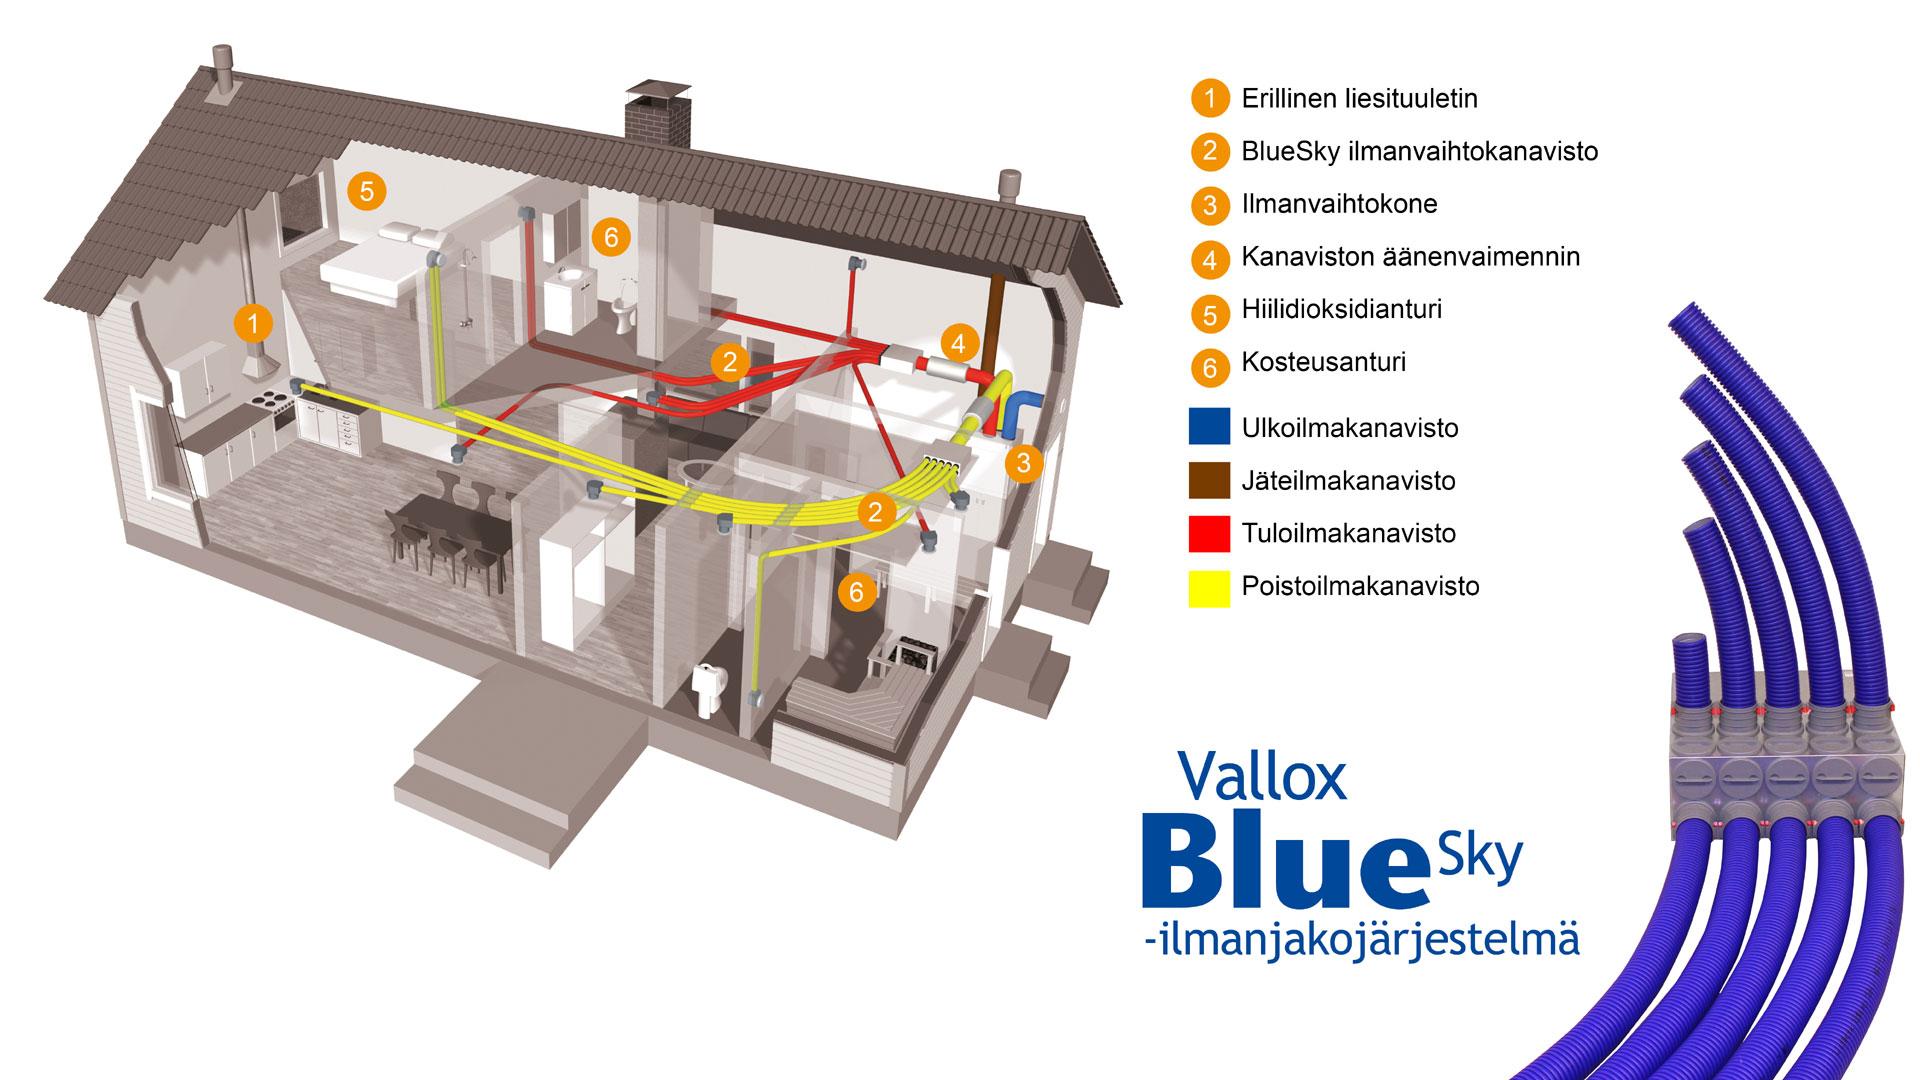 Vallox BlueSky mahtuu pieneen tilaan välipohjiin ja seiniin. Ilmanvaihtoputken halkaisija on 75 mm.